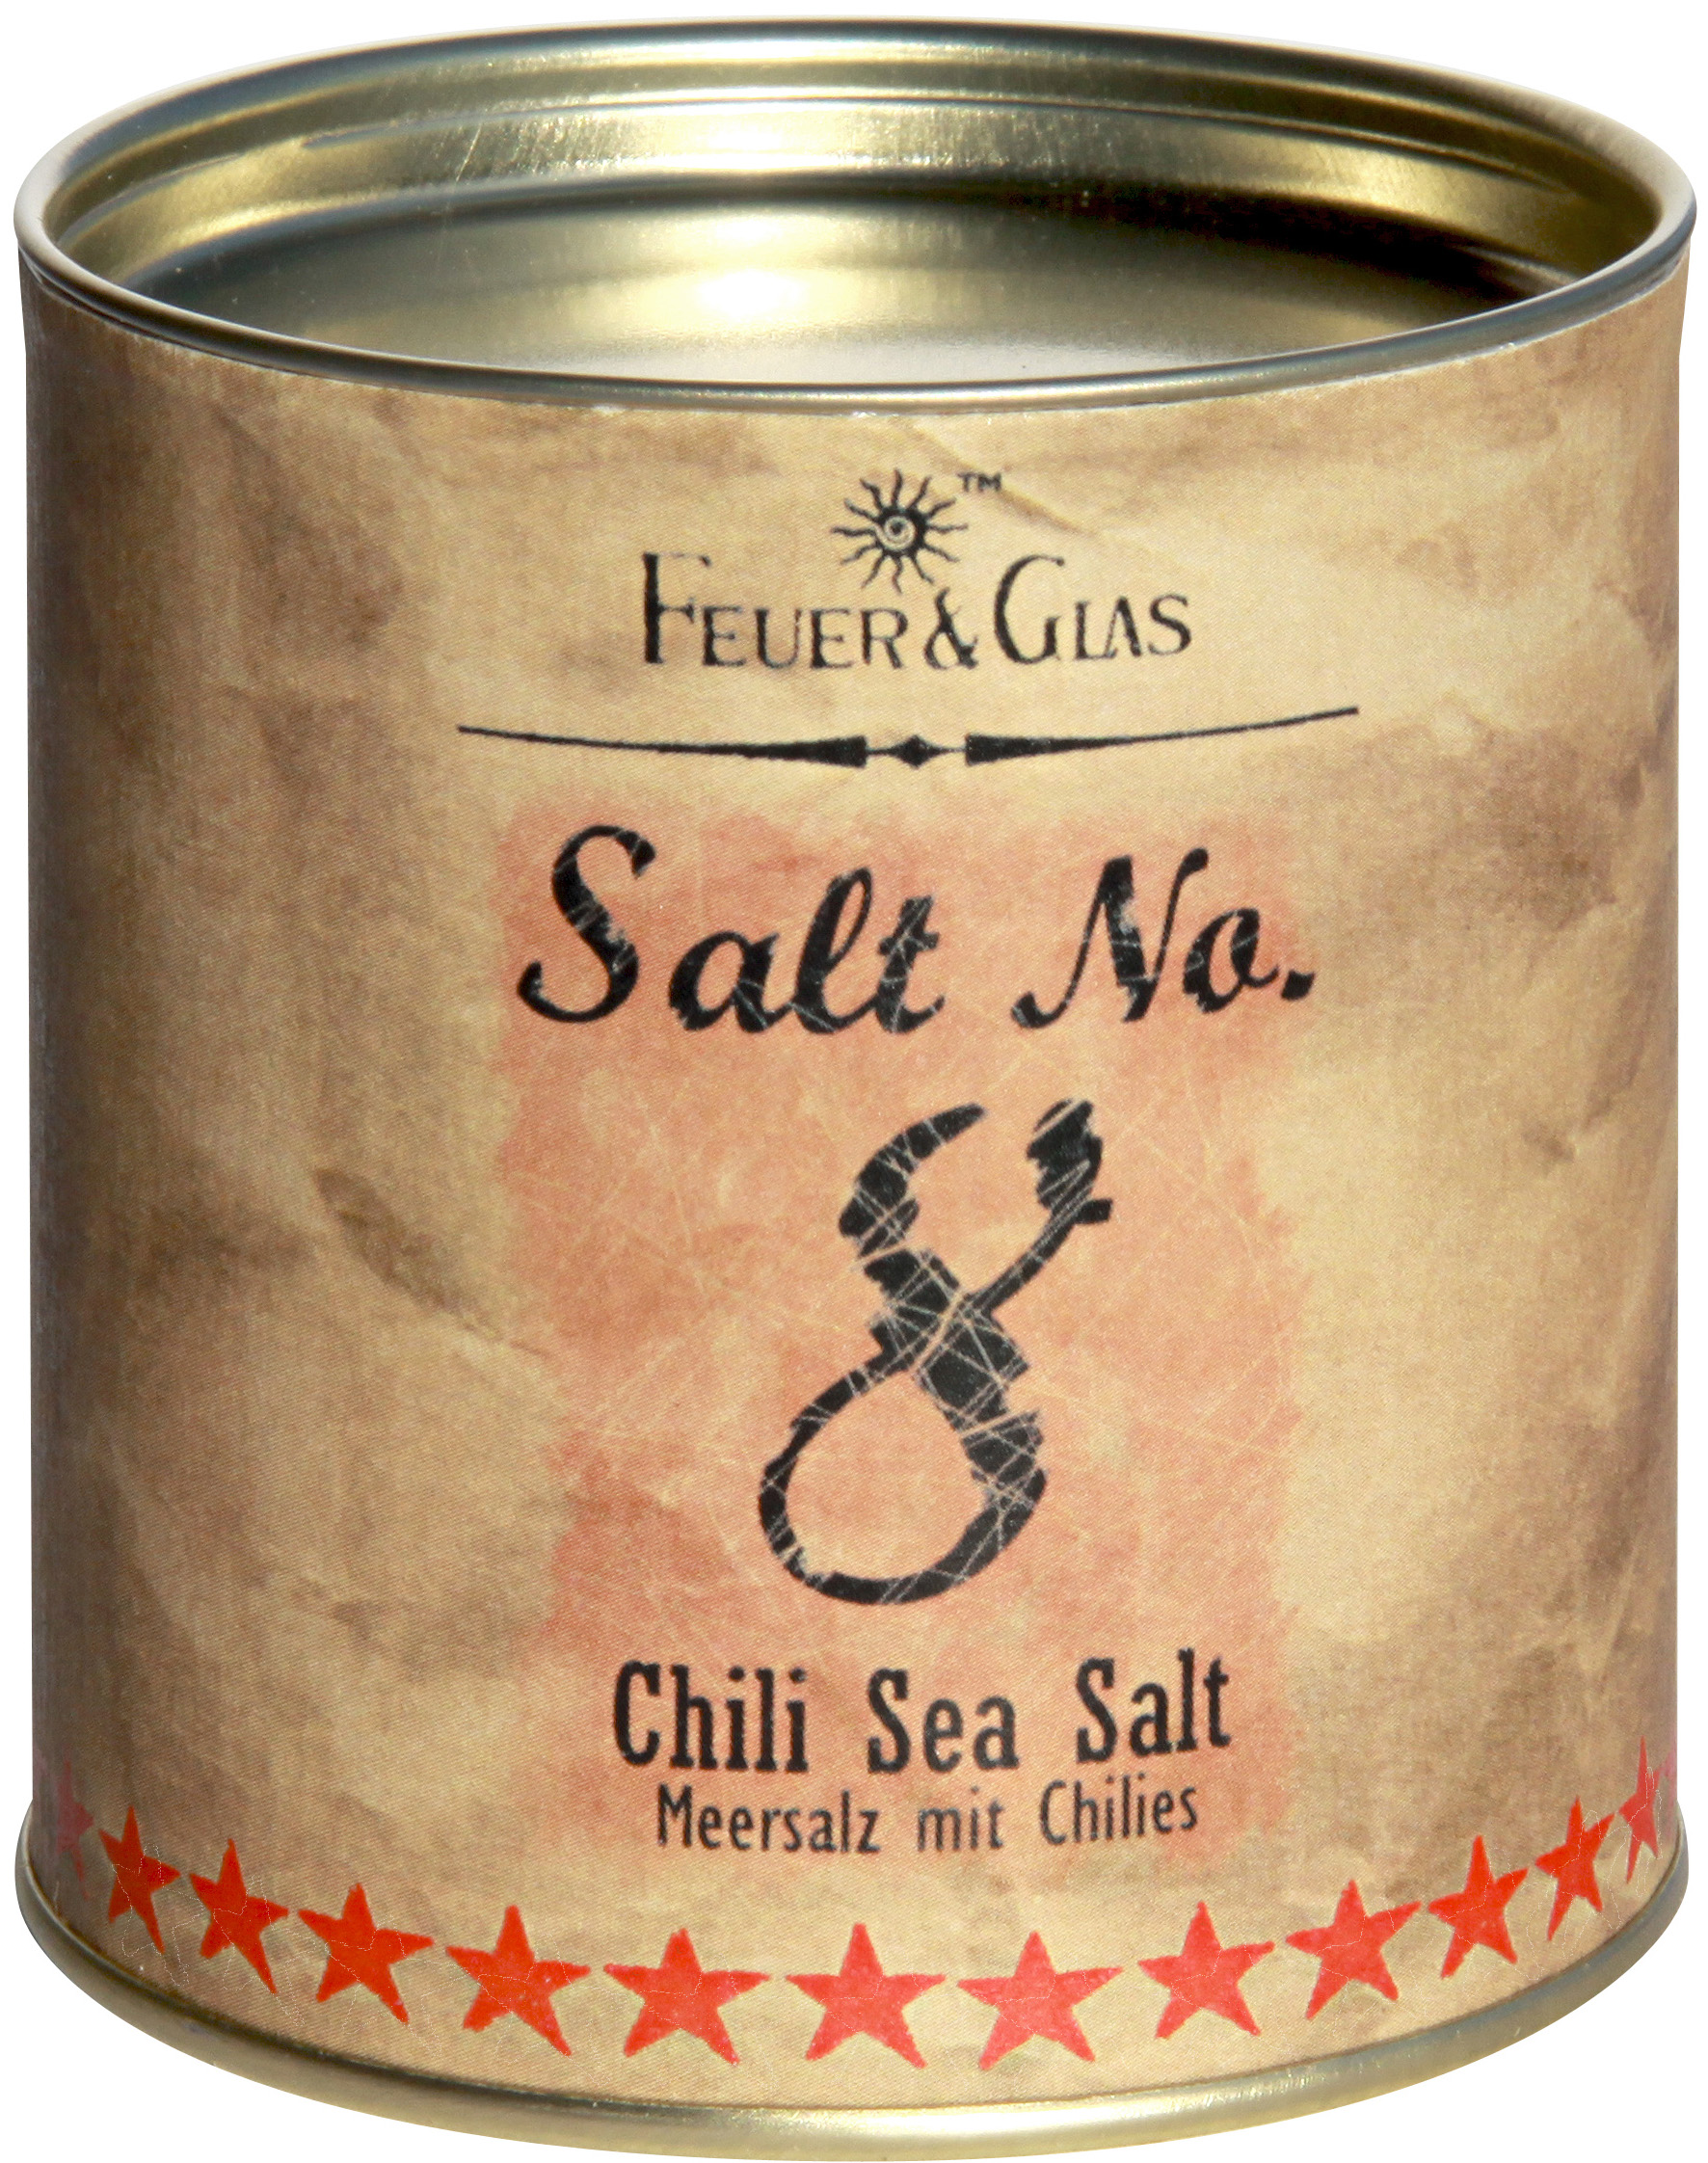 Salt No.8 - Chili Sea Salt